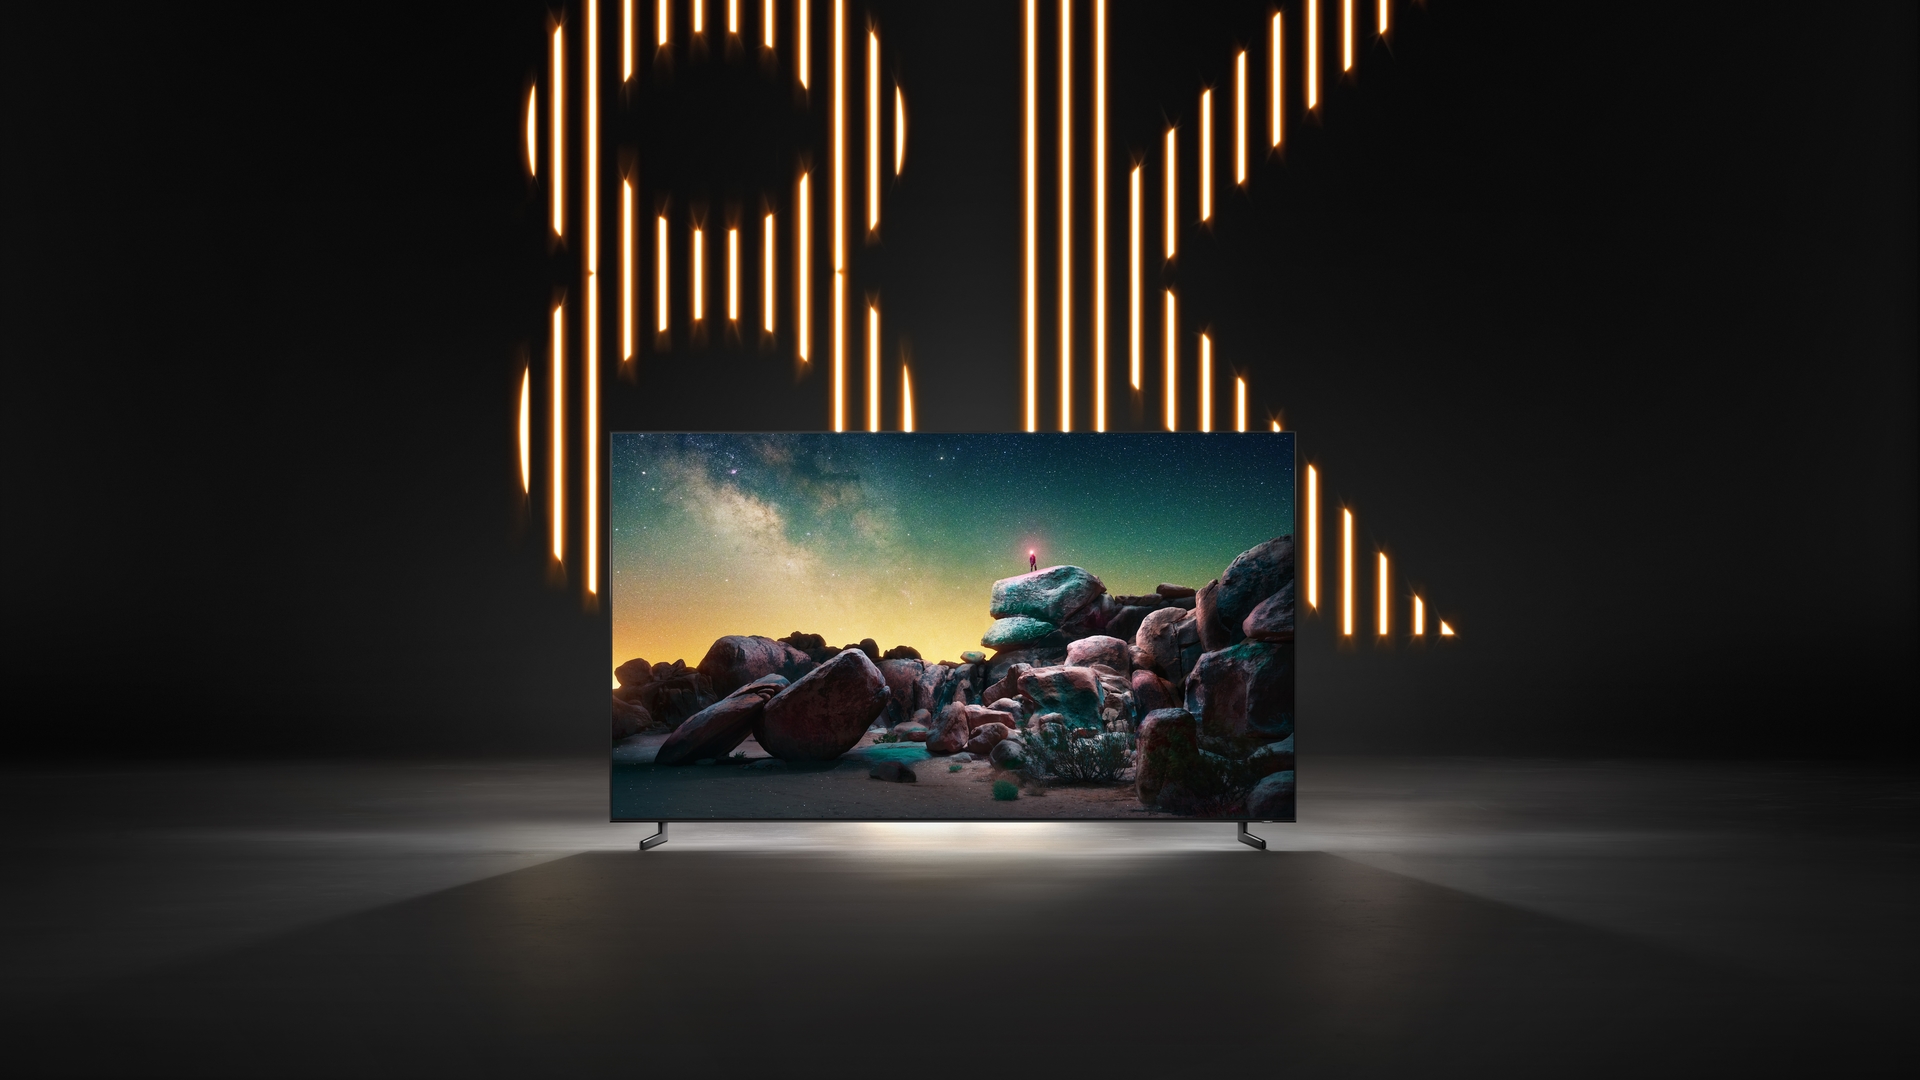 Samsung 8k Qled Tv - 1920x1080 Wallpaper 